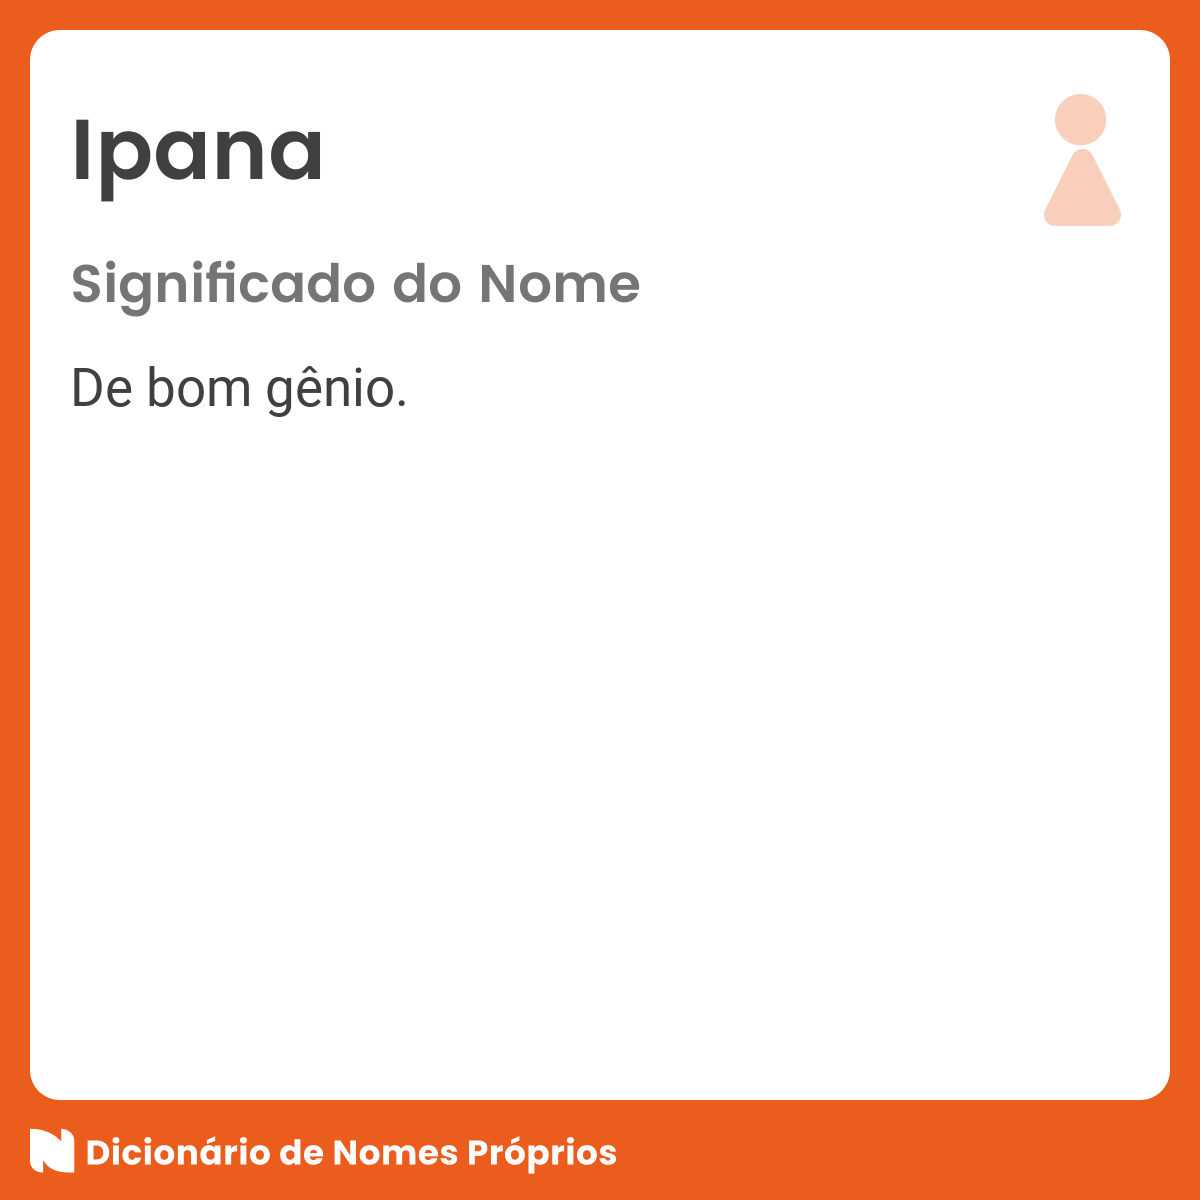 https://static.dicionariodenomesproprios.com.br/upload/facebook/i/ipana-1x1.png